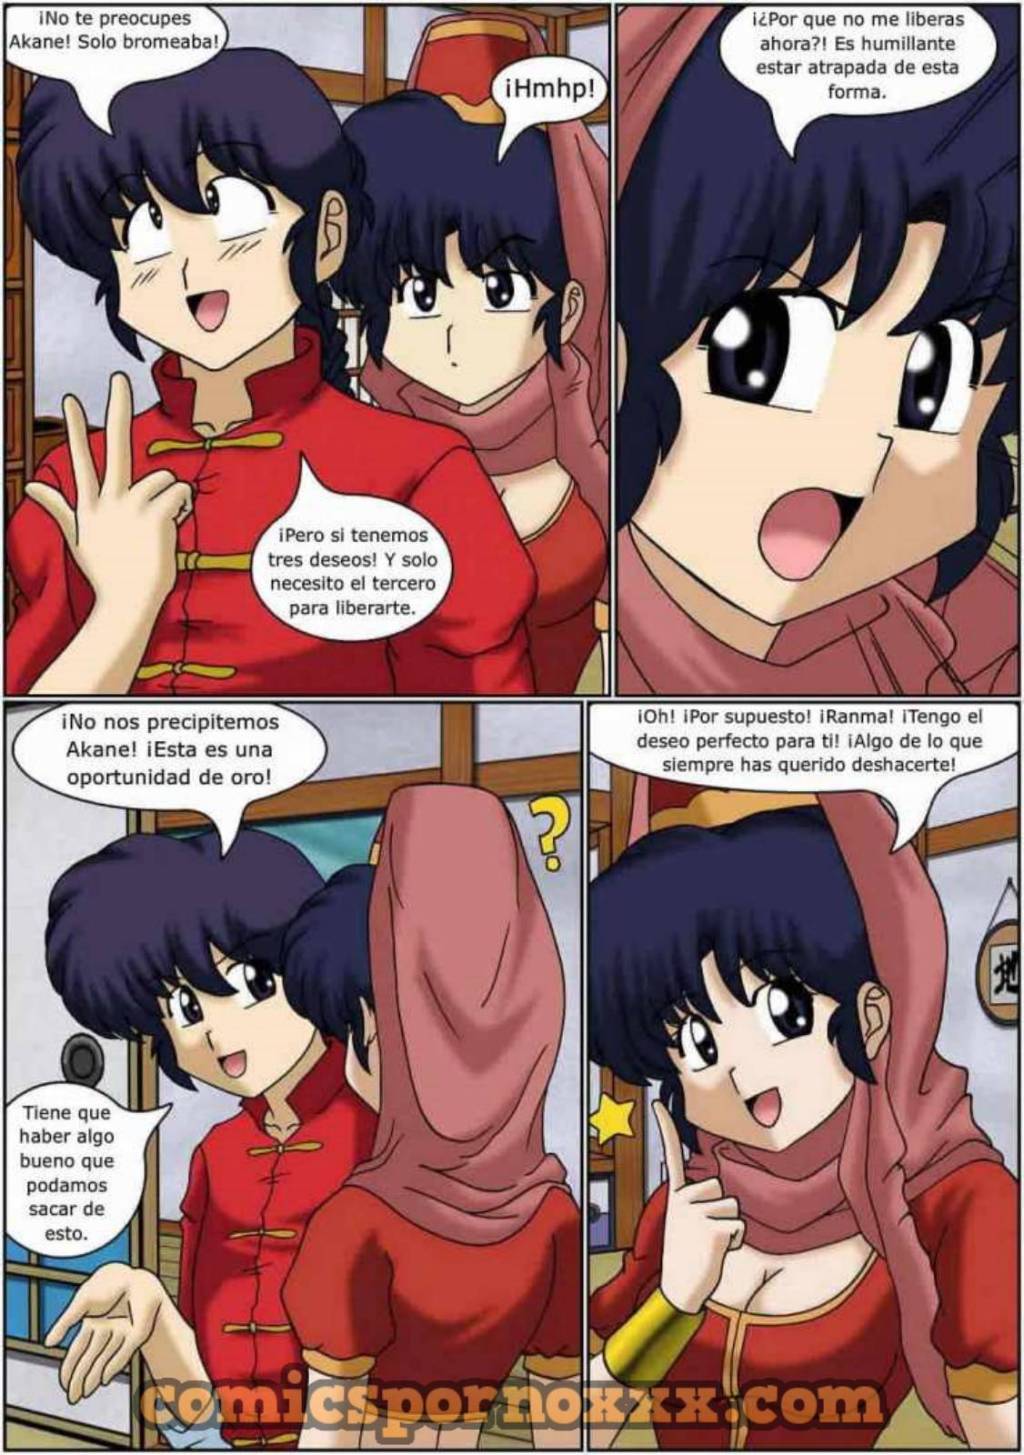 I Dream of Akane - 19 - Comics Porno - Hentai Manga - Cartoon XXX